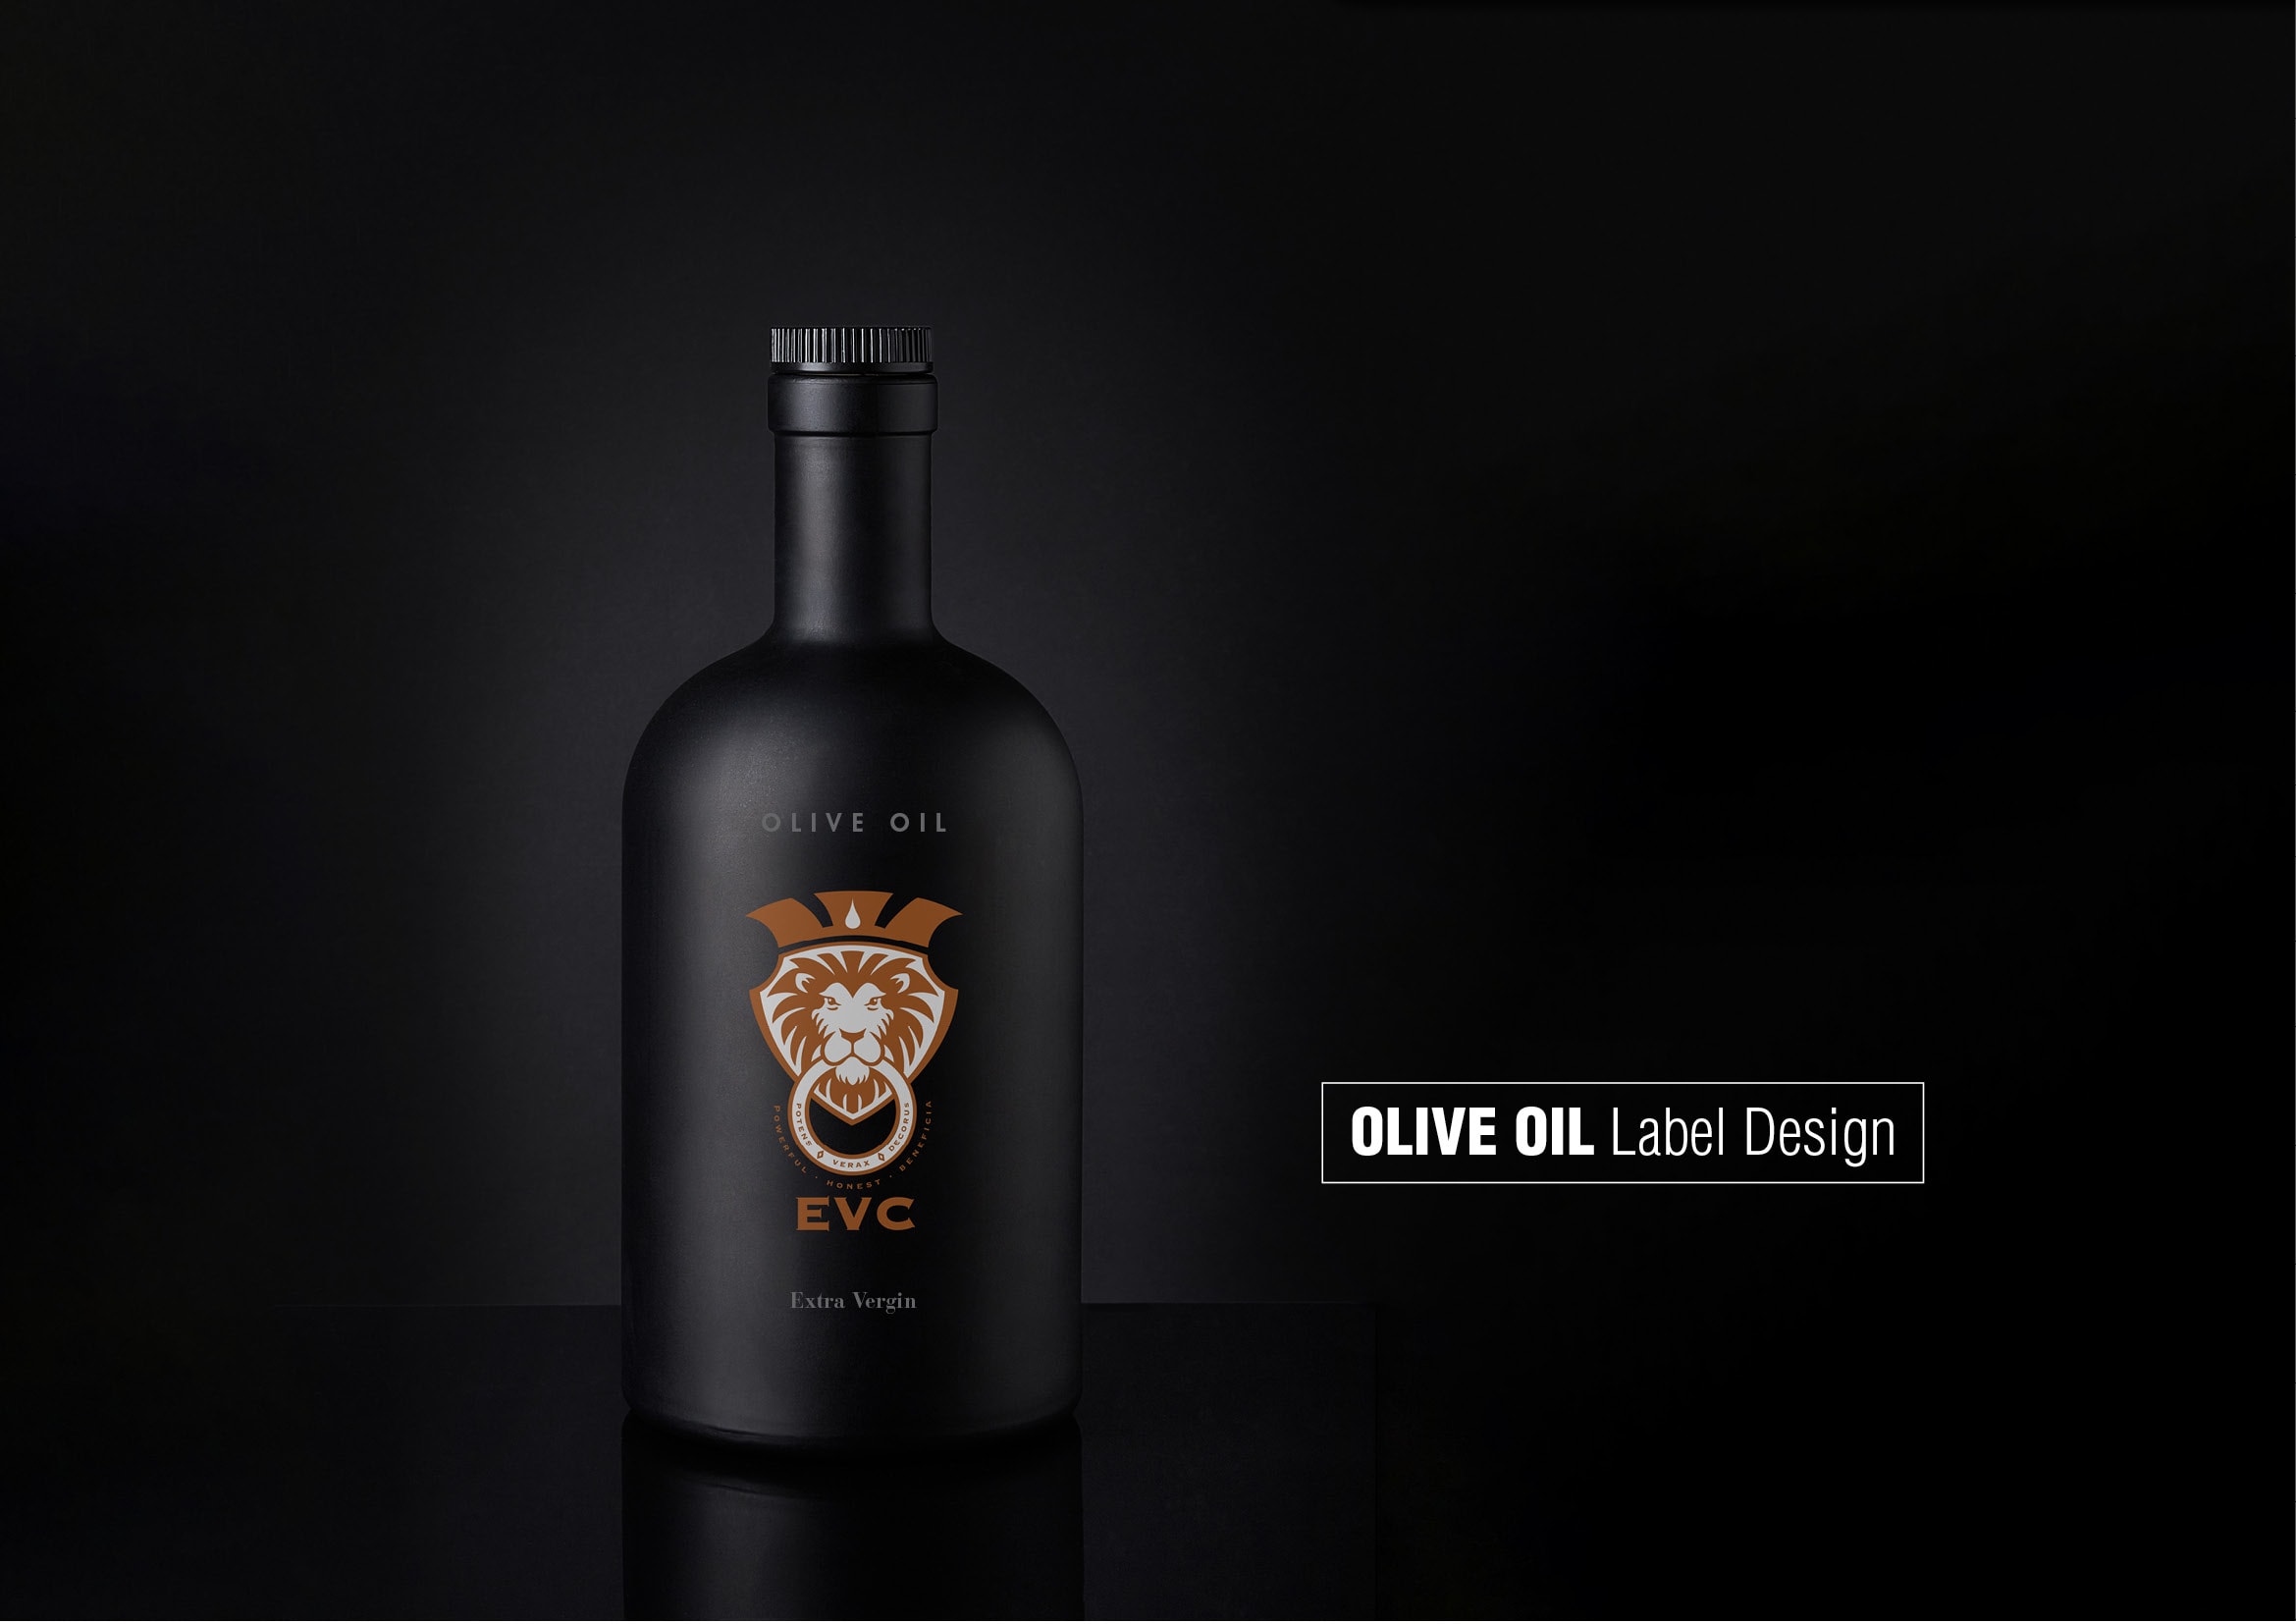 Etiketten Gestaltung für hochwertiges, rein biologisch produziertes Olivenöl aus Sizilien durch Grafik-Designer Ronald Wissler